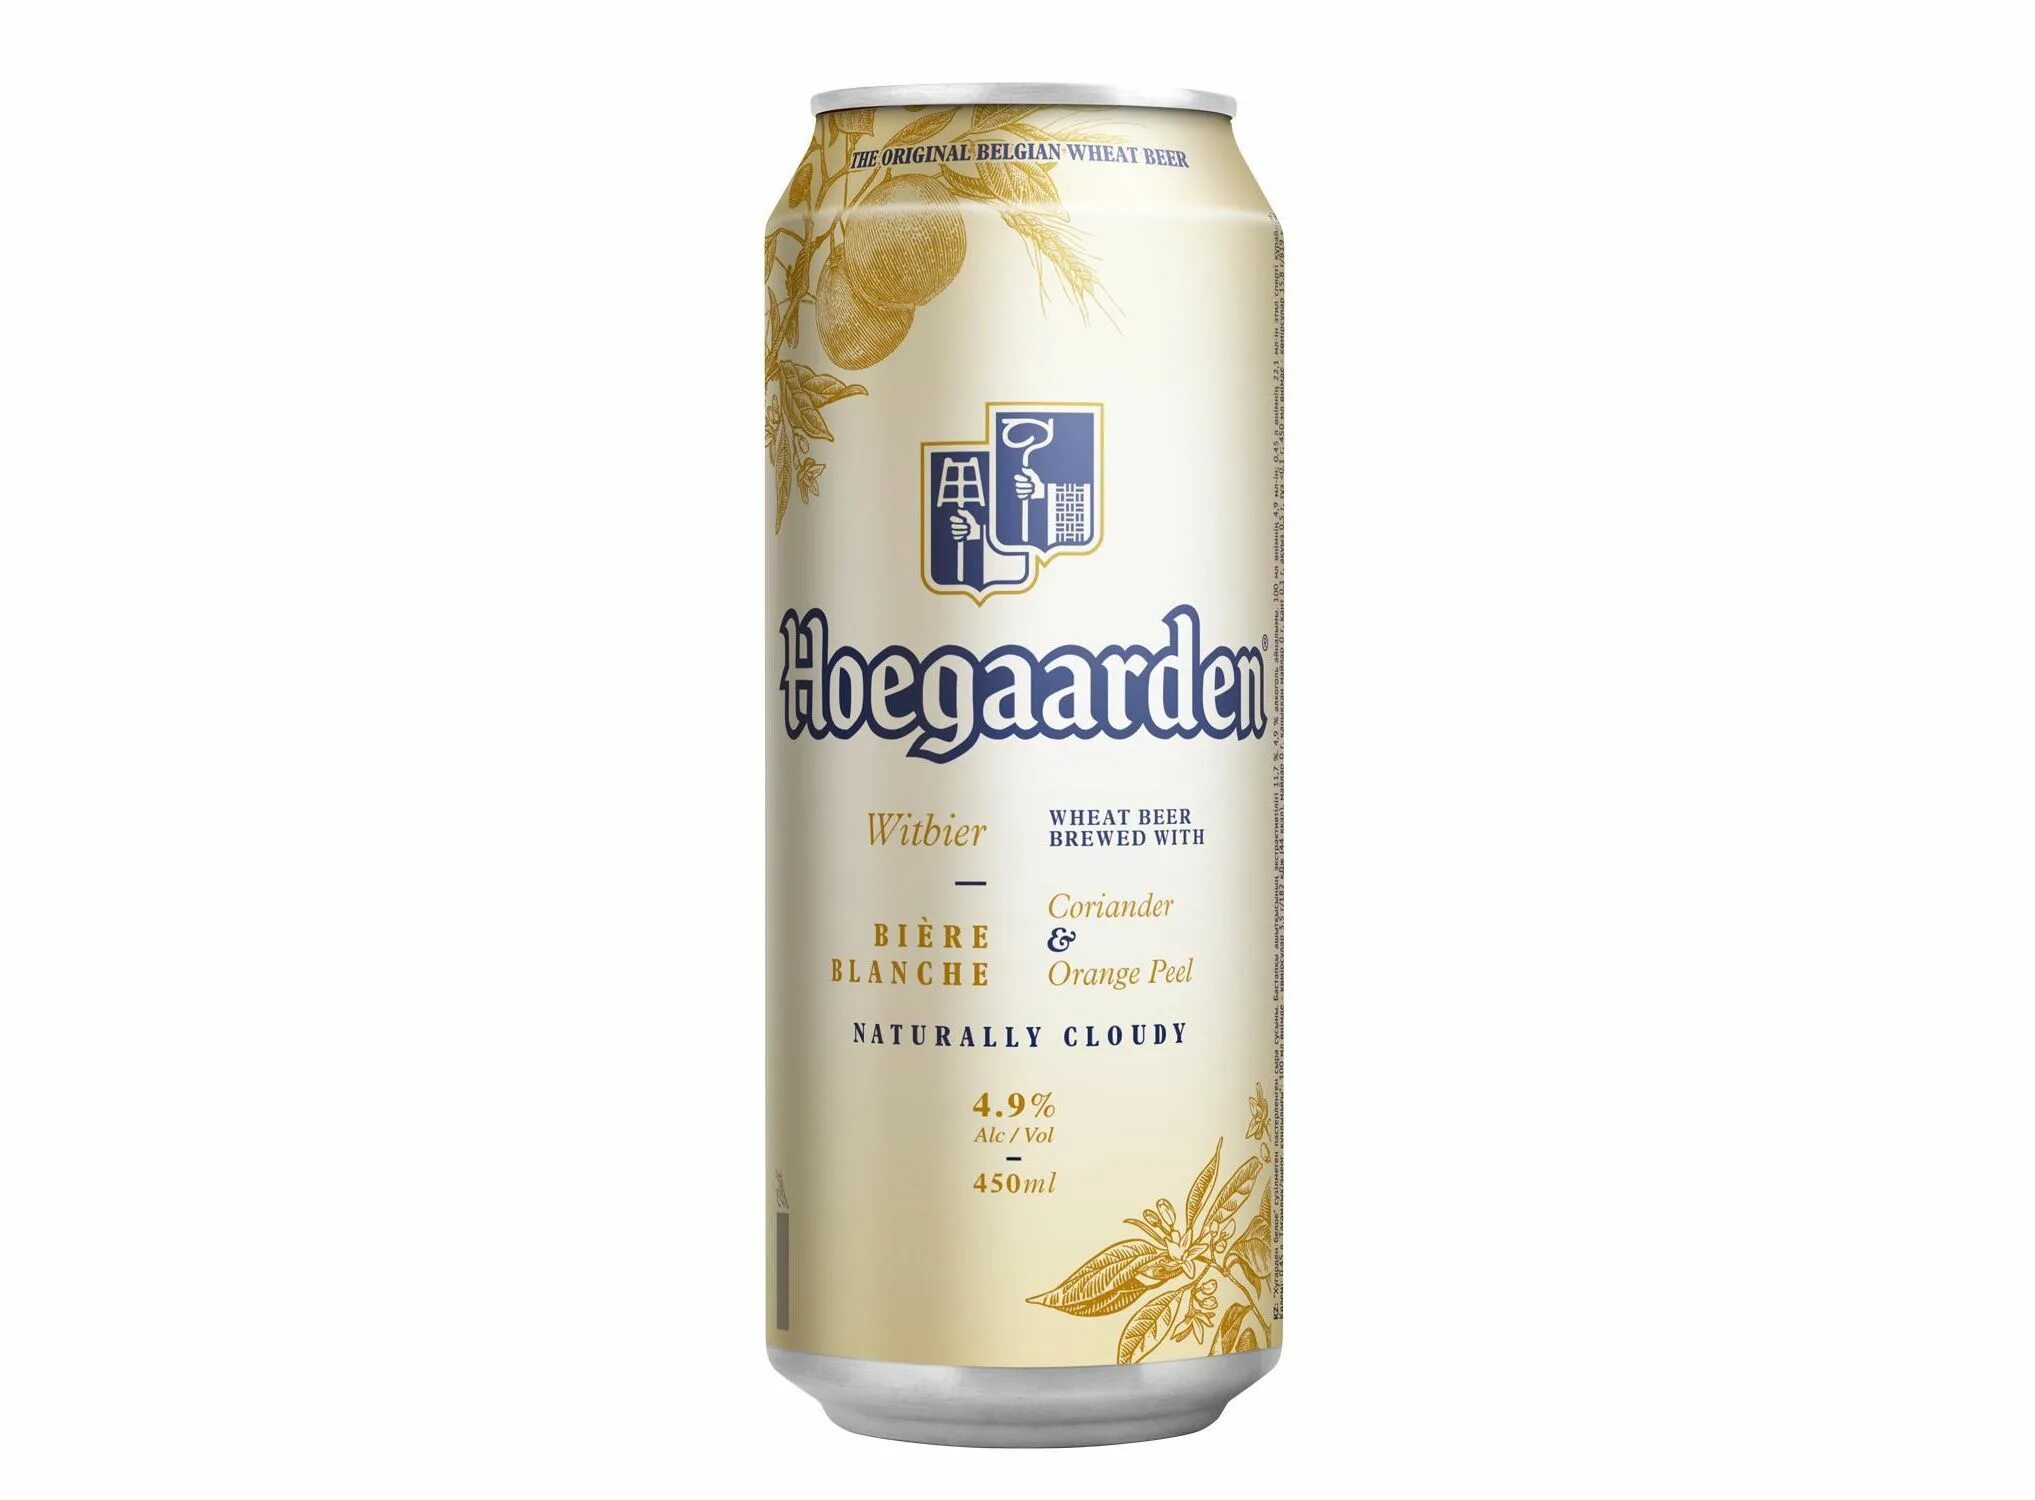 Пиво 0.45 ж б. Пивной напиток Хугарден белое нефильтрованное 4.9 0.45л ж/б. Пиво Хугарден белое нефильтрованное 0,45 жб. Напиток пивной Хугарден белое нефильтрованное 0,45 л ж/б. Напиток пивной Хугарден белое 4,9% ж/б 0,45 л.